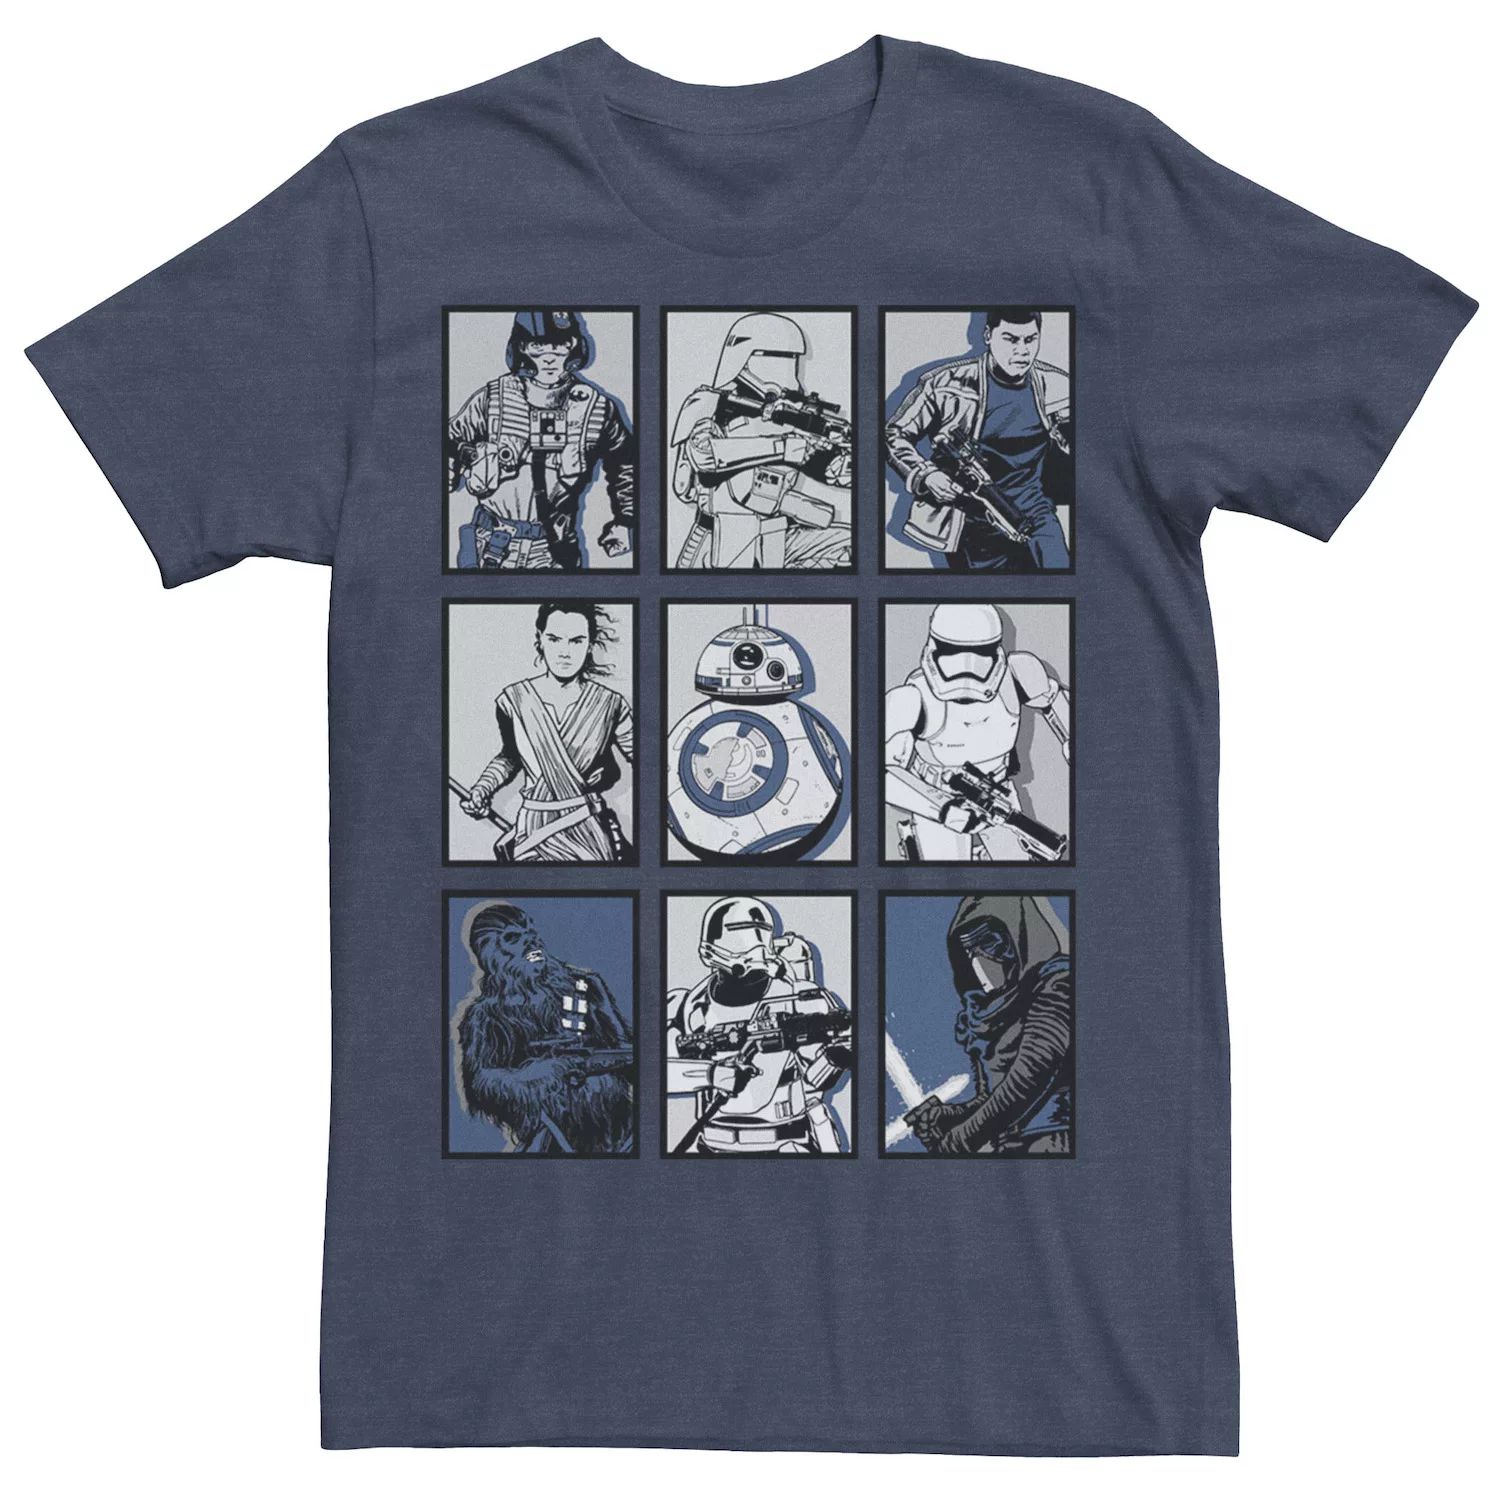 Мужская футболка с графическим плакатом и плакатом «Пробуждение Силы» Star Wars мужская классическая футболка с графическим плакатом rebel star wars светло синий